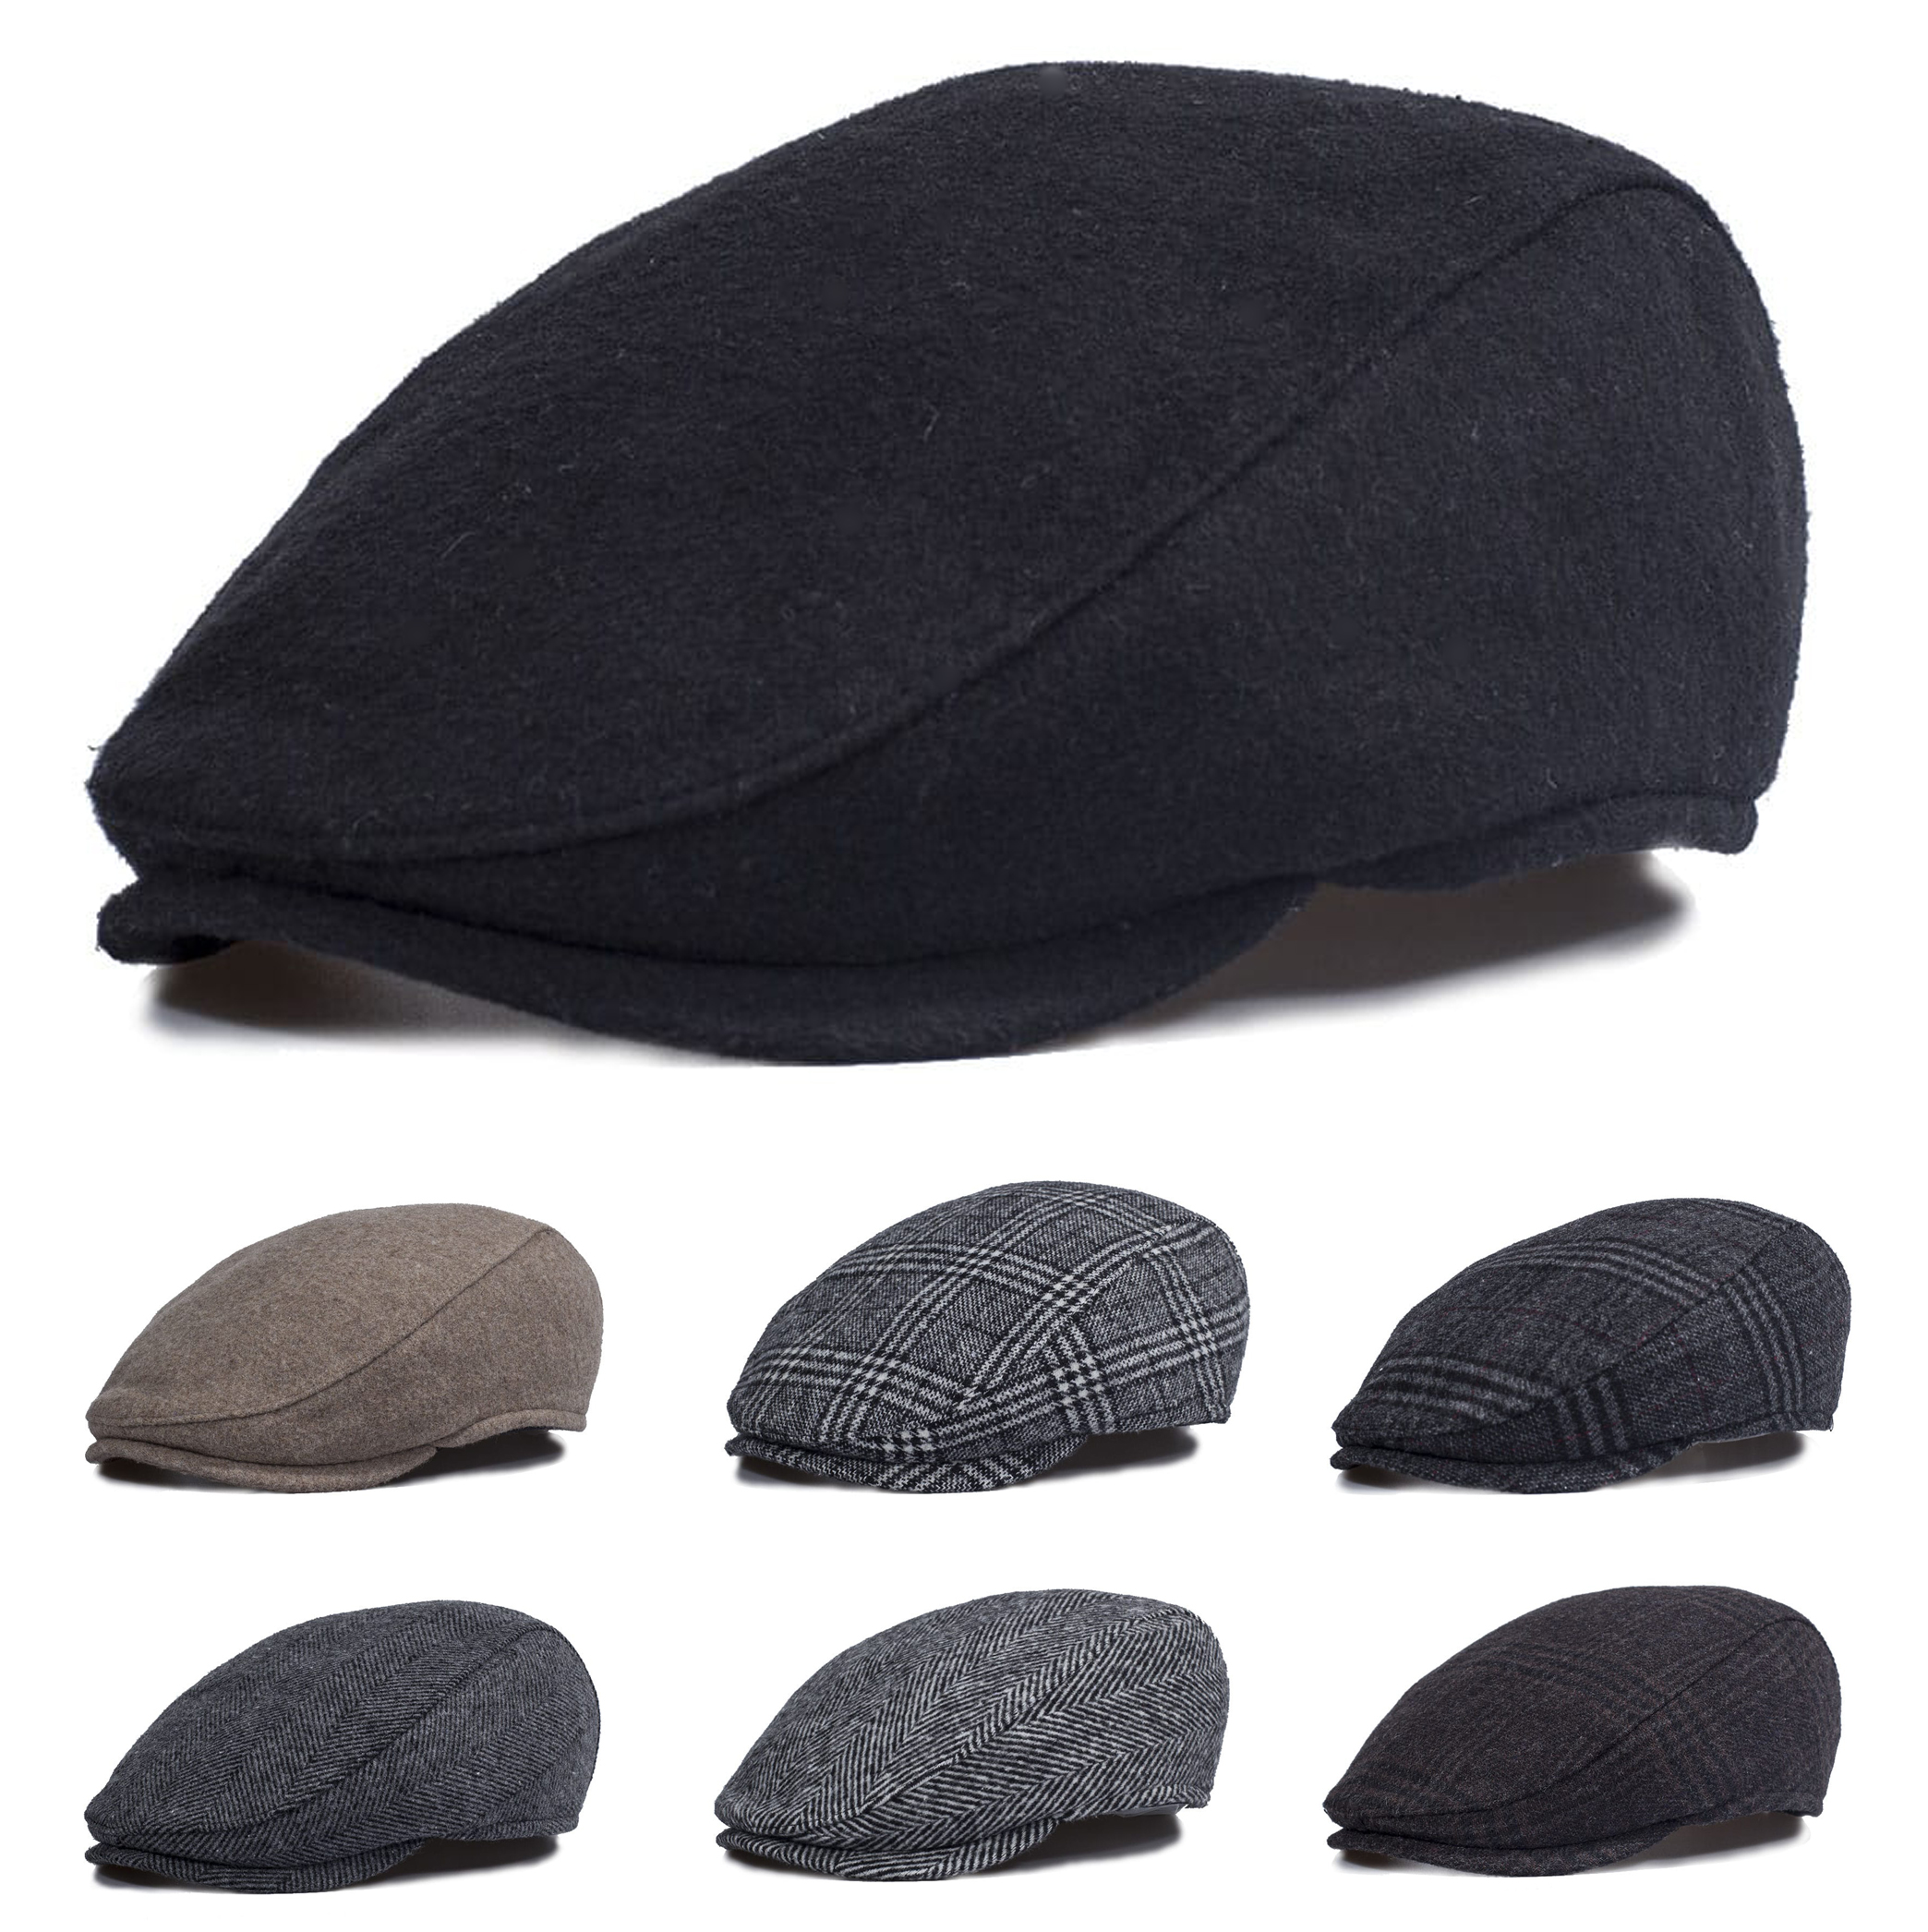 Kasket, Şapka, Cap Şapka, Erkek Şapka, Kasket Şapka Modelleri